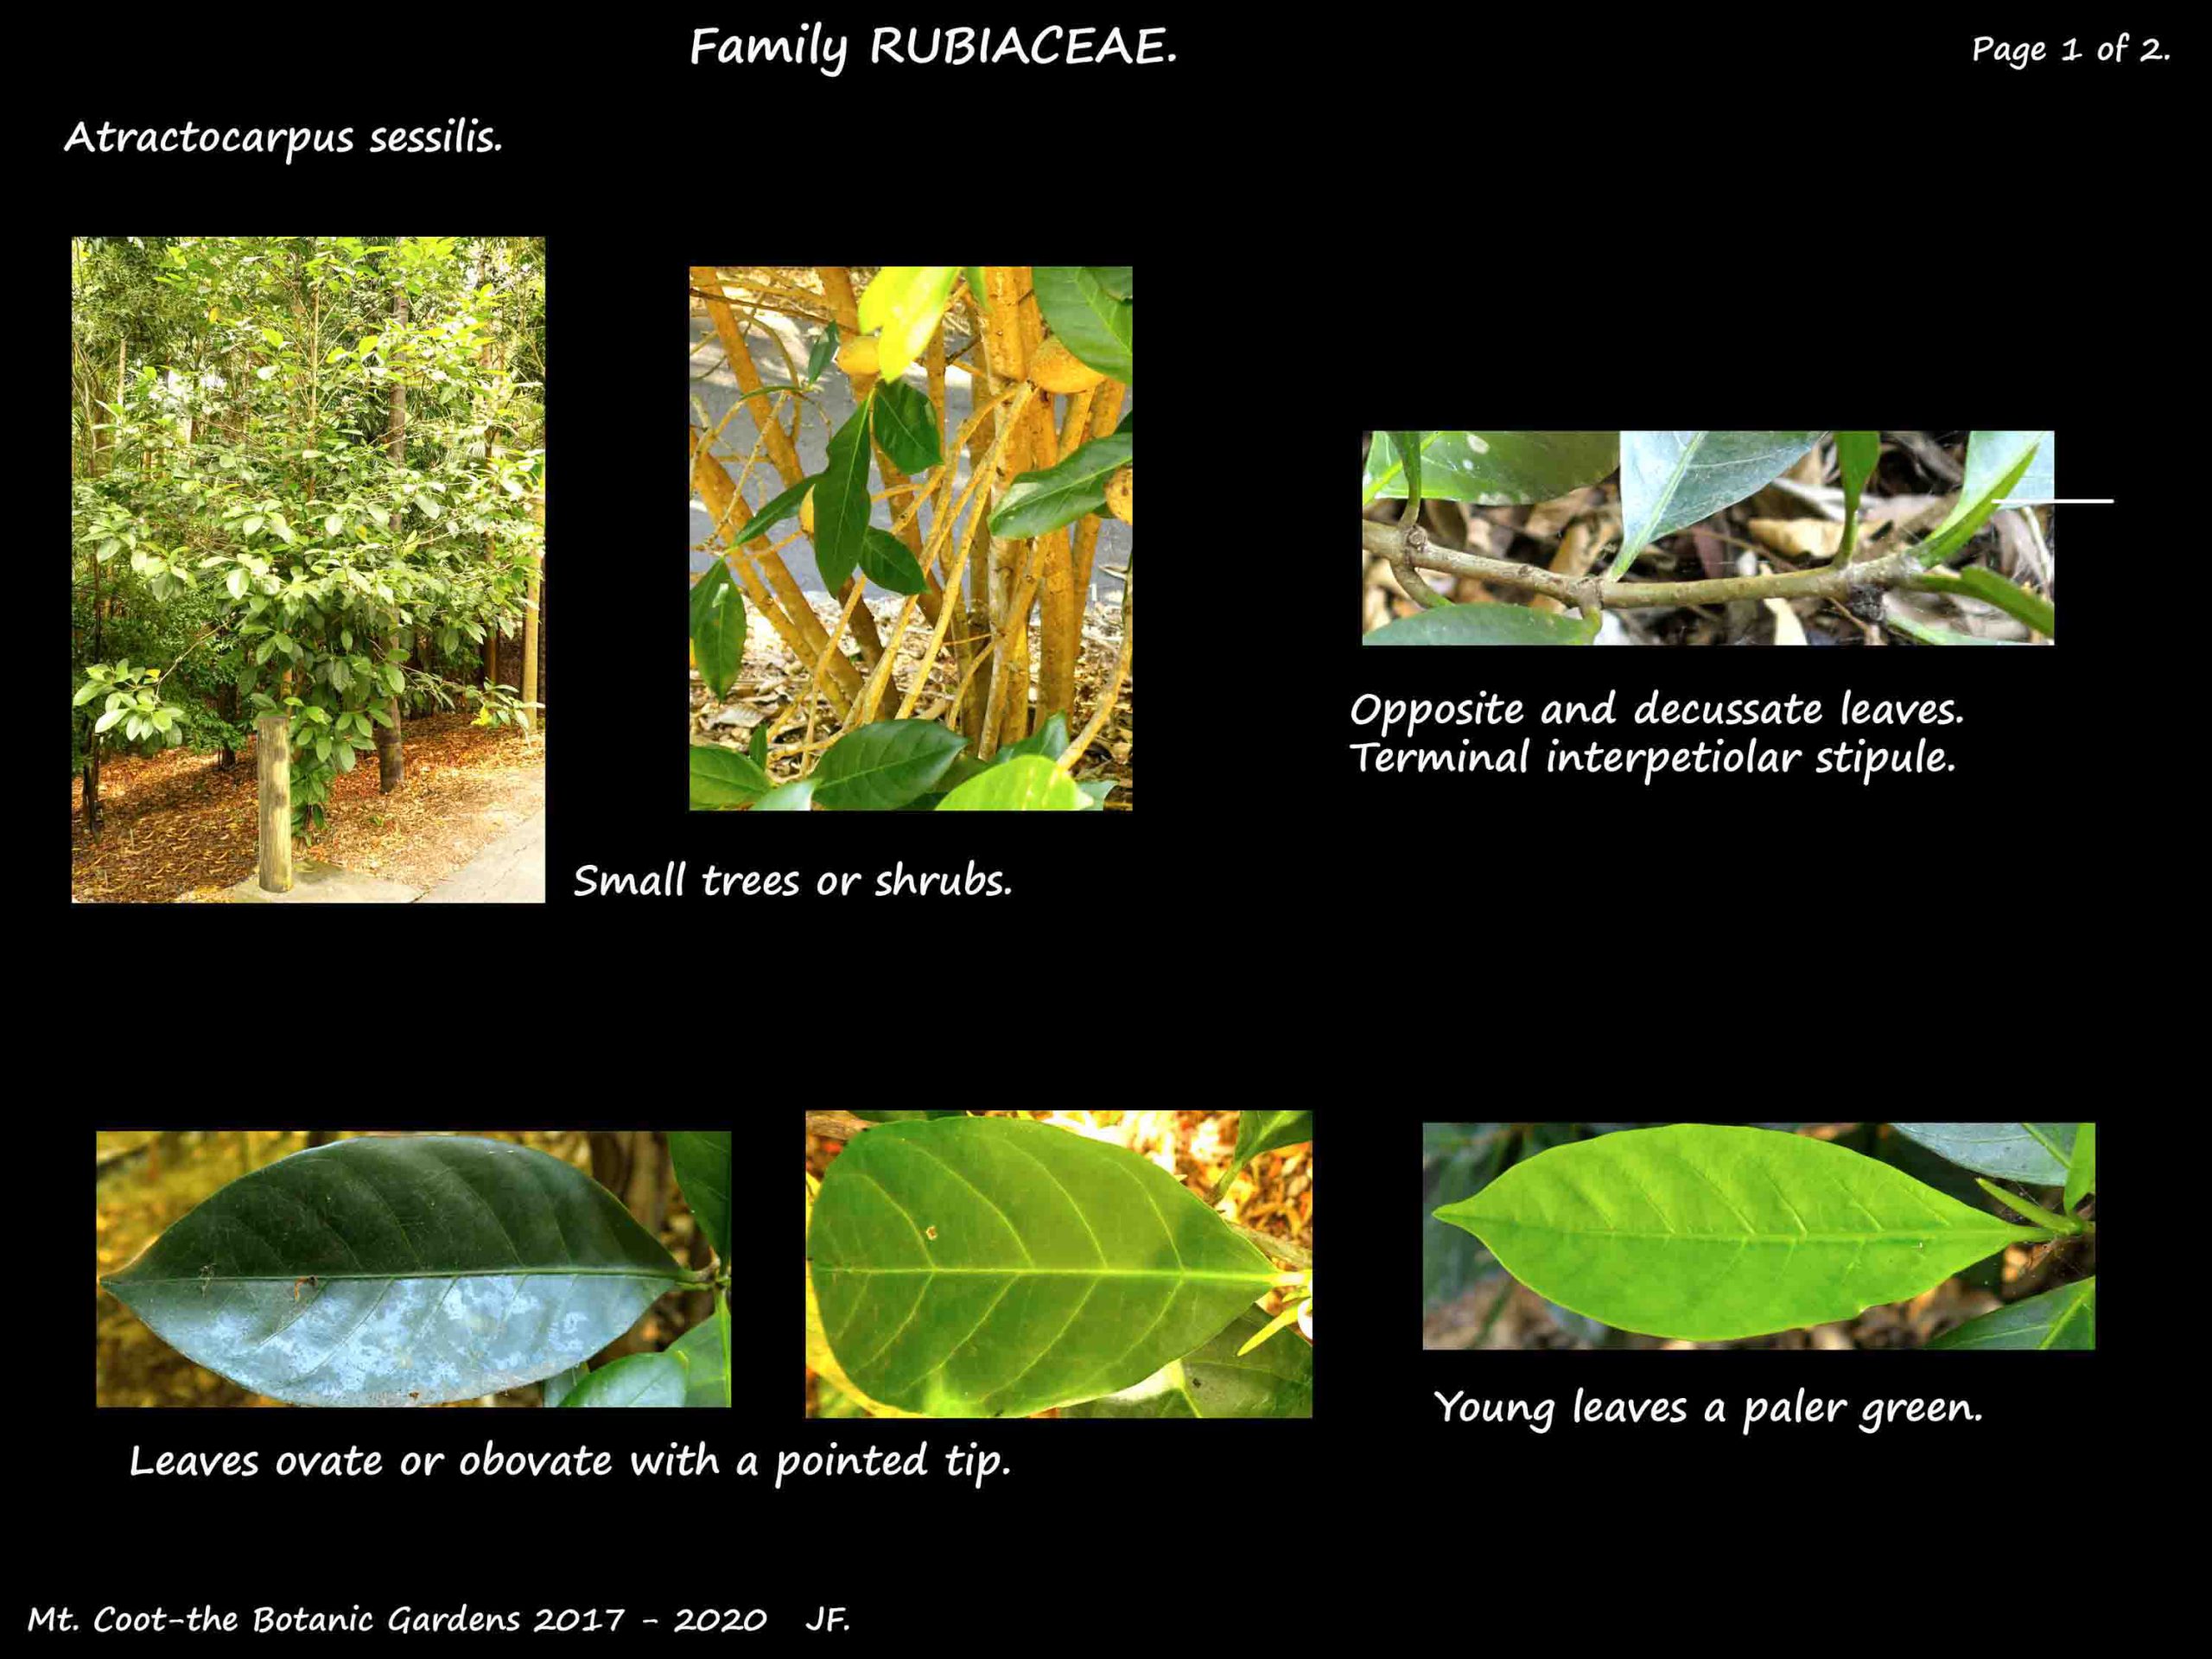 1 Atractocarpus sessilis leaves